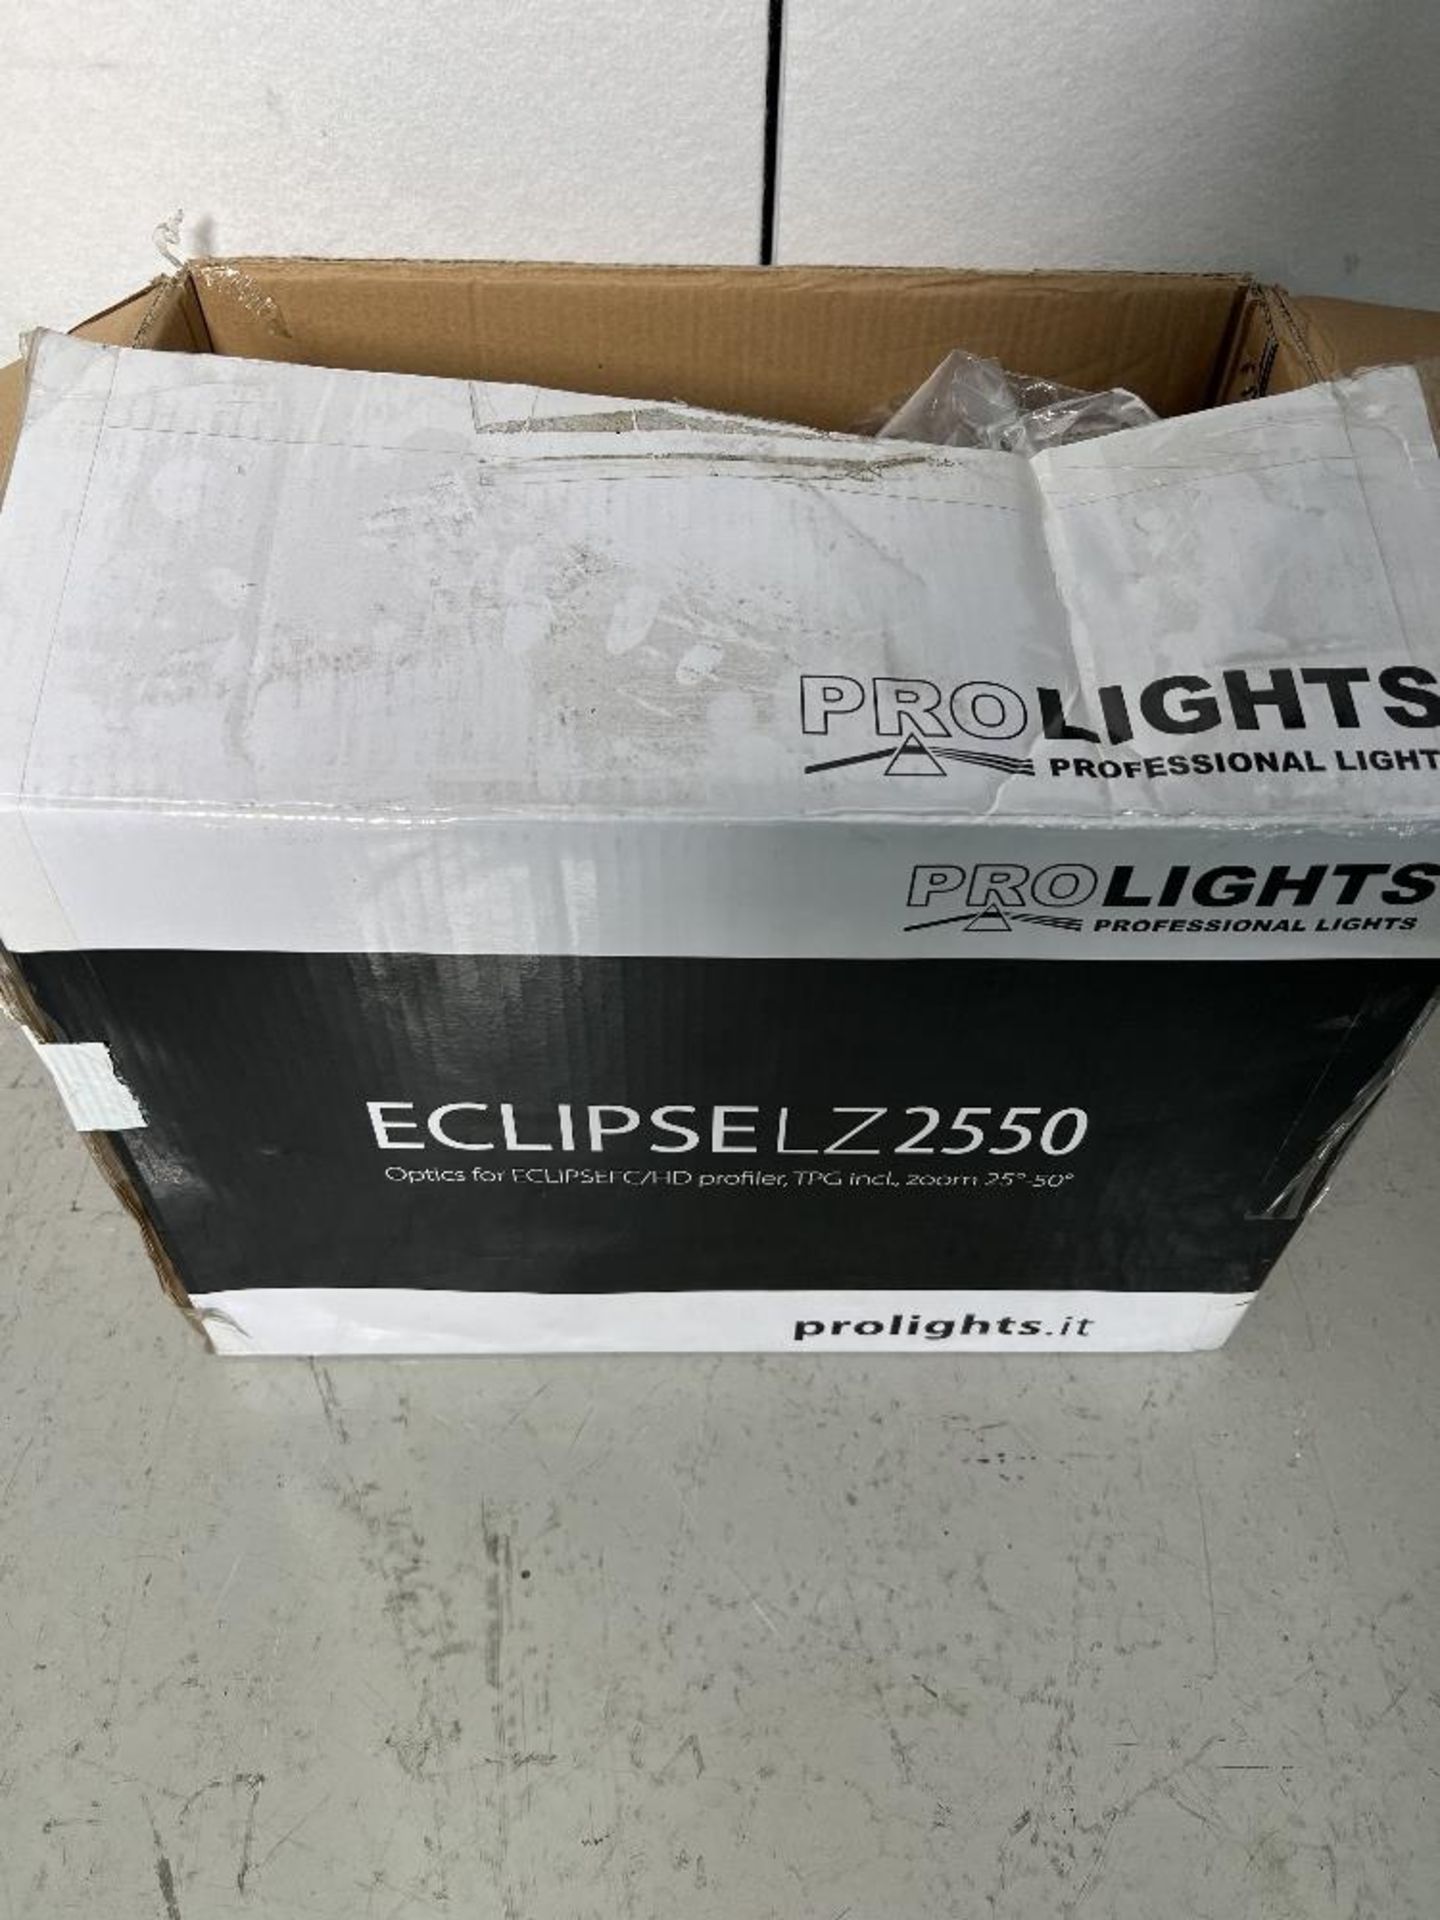 (3) Prolights Eclipse LZ 2550 fixed lens adaptors